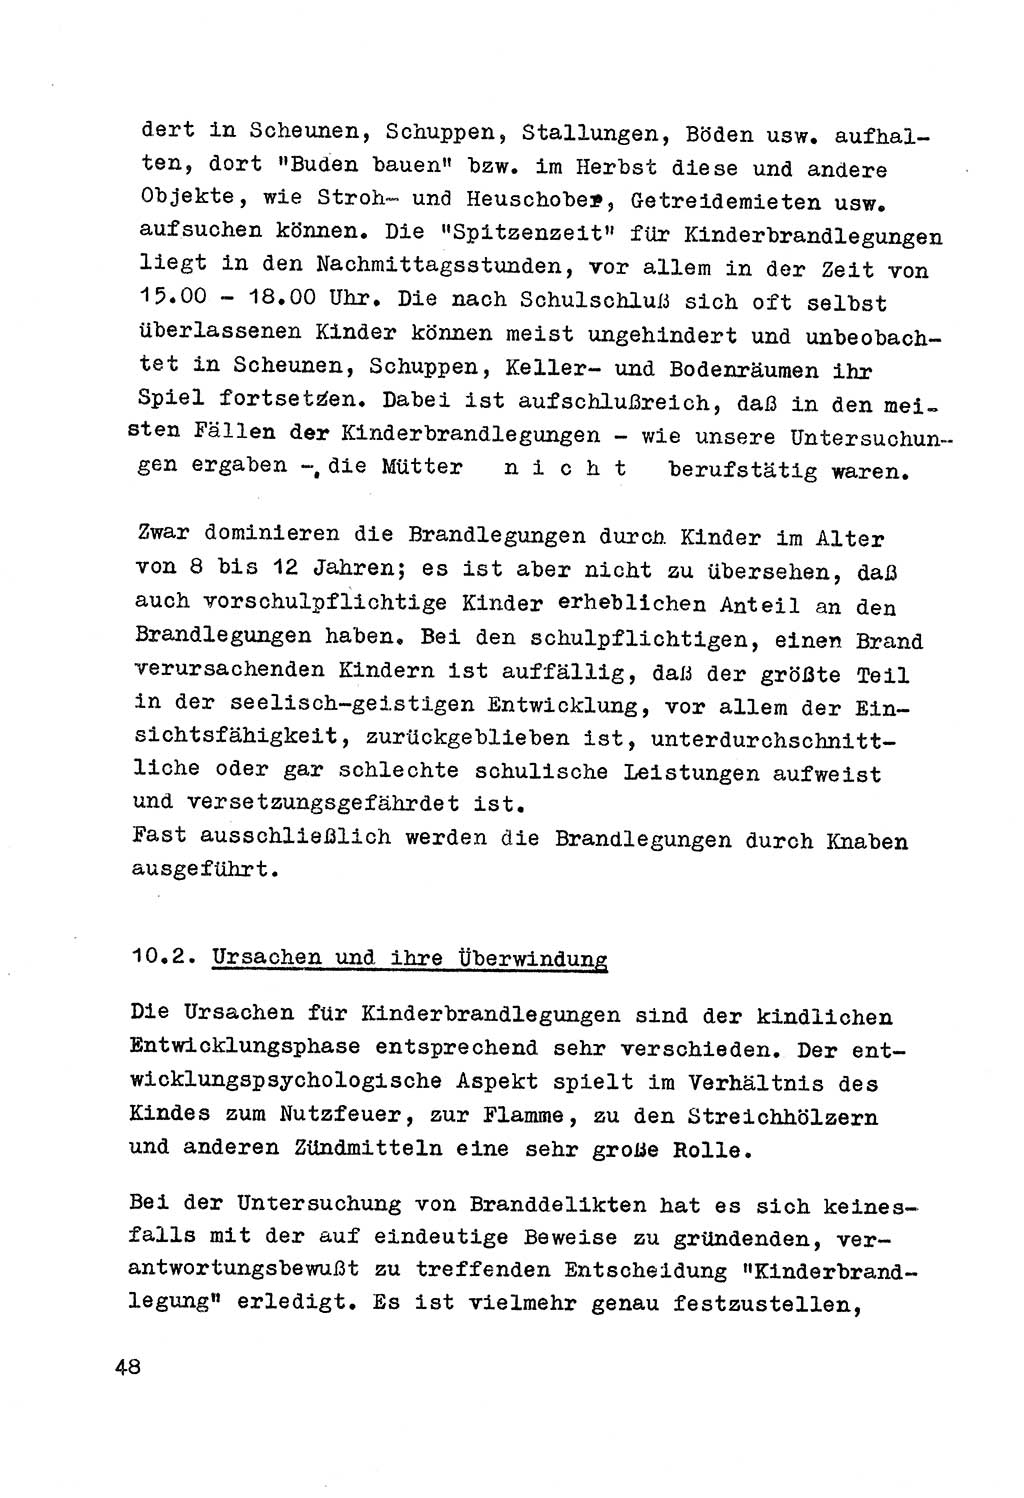 Strafrecht der DDR (Deutsche Demokratische Republik), Besonderer Teil, Lehrmaterial, Heft 7 1970, Seite 48 (Strafr. DDR BT Lehrmat. H. 7 1970, S. 48)